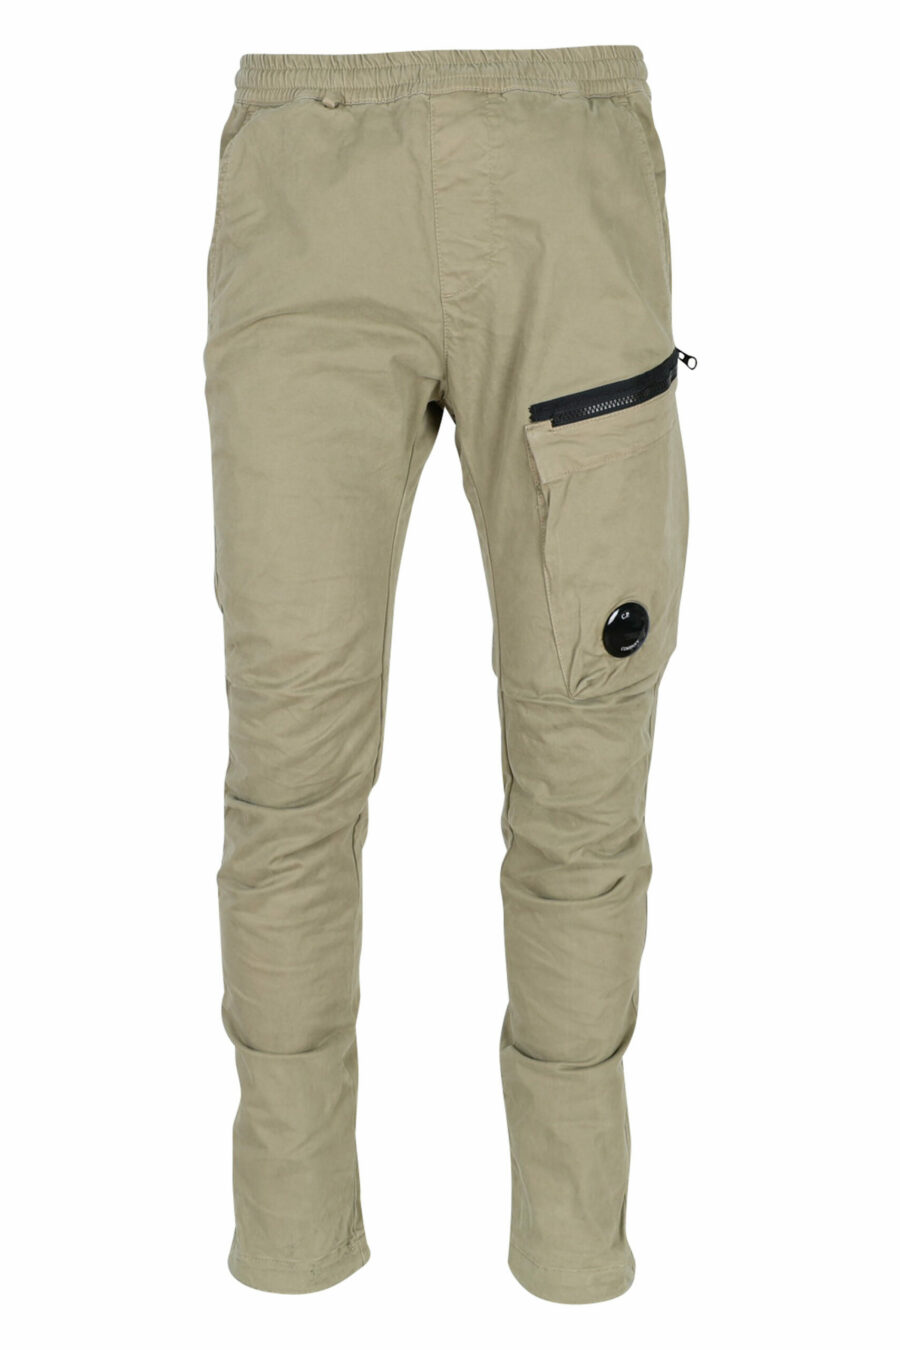 Pantalon en satin extensible beige avec poche latérale et lentille de logo - 7620943578416